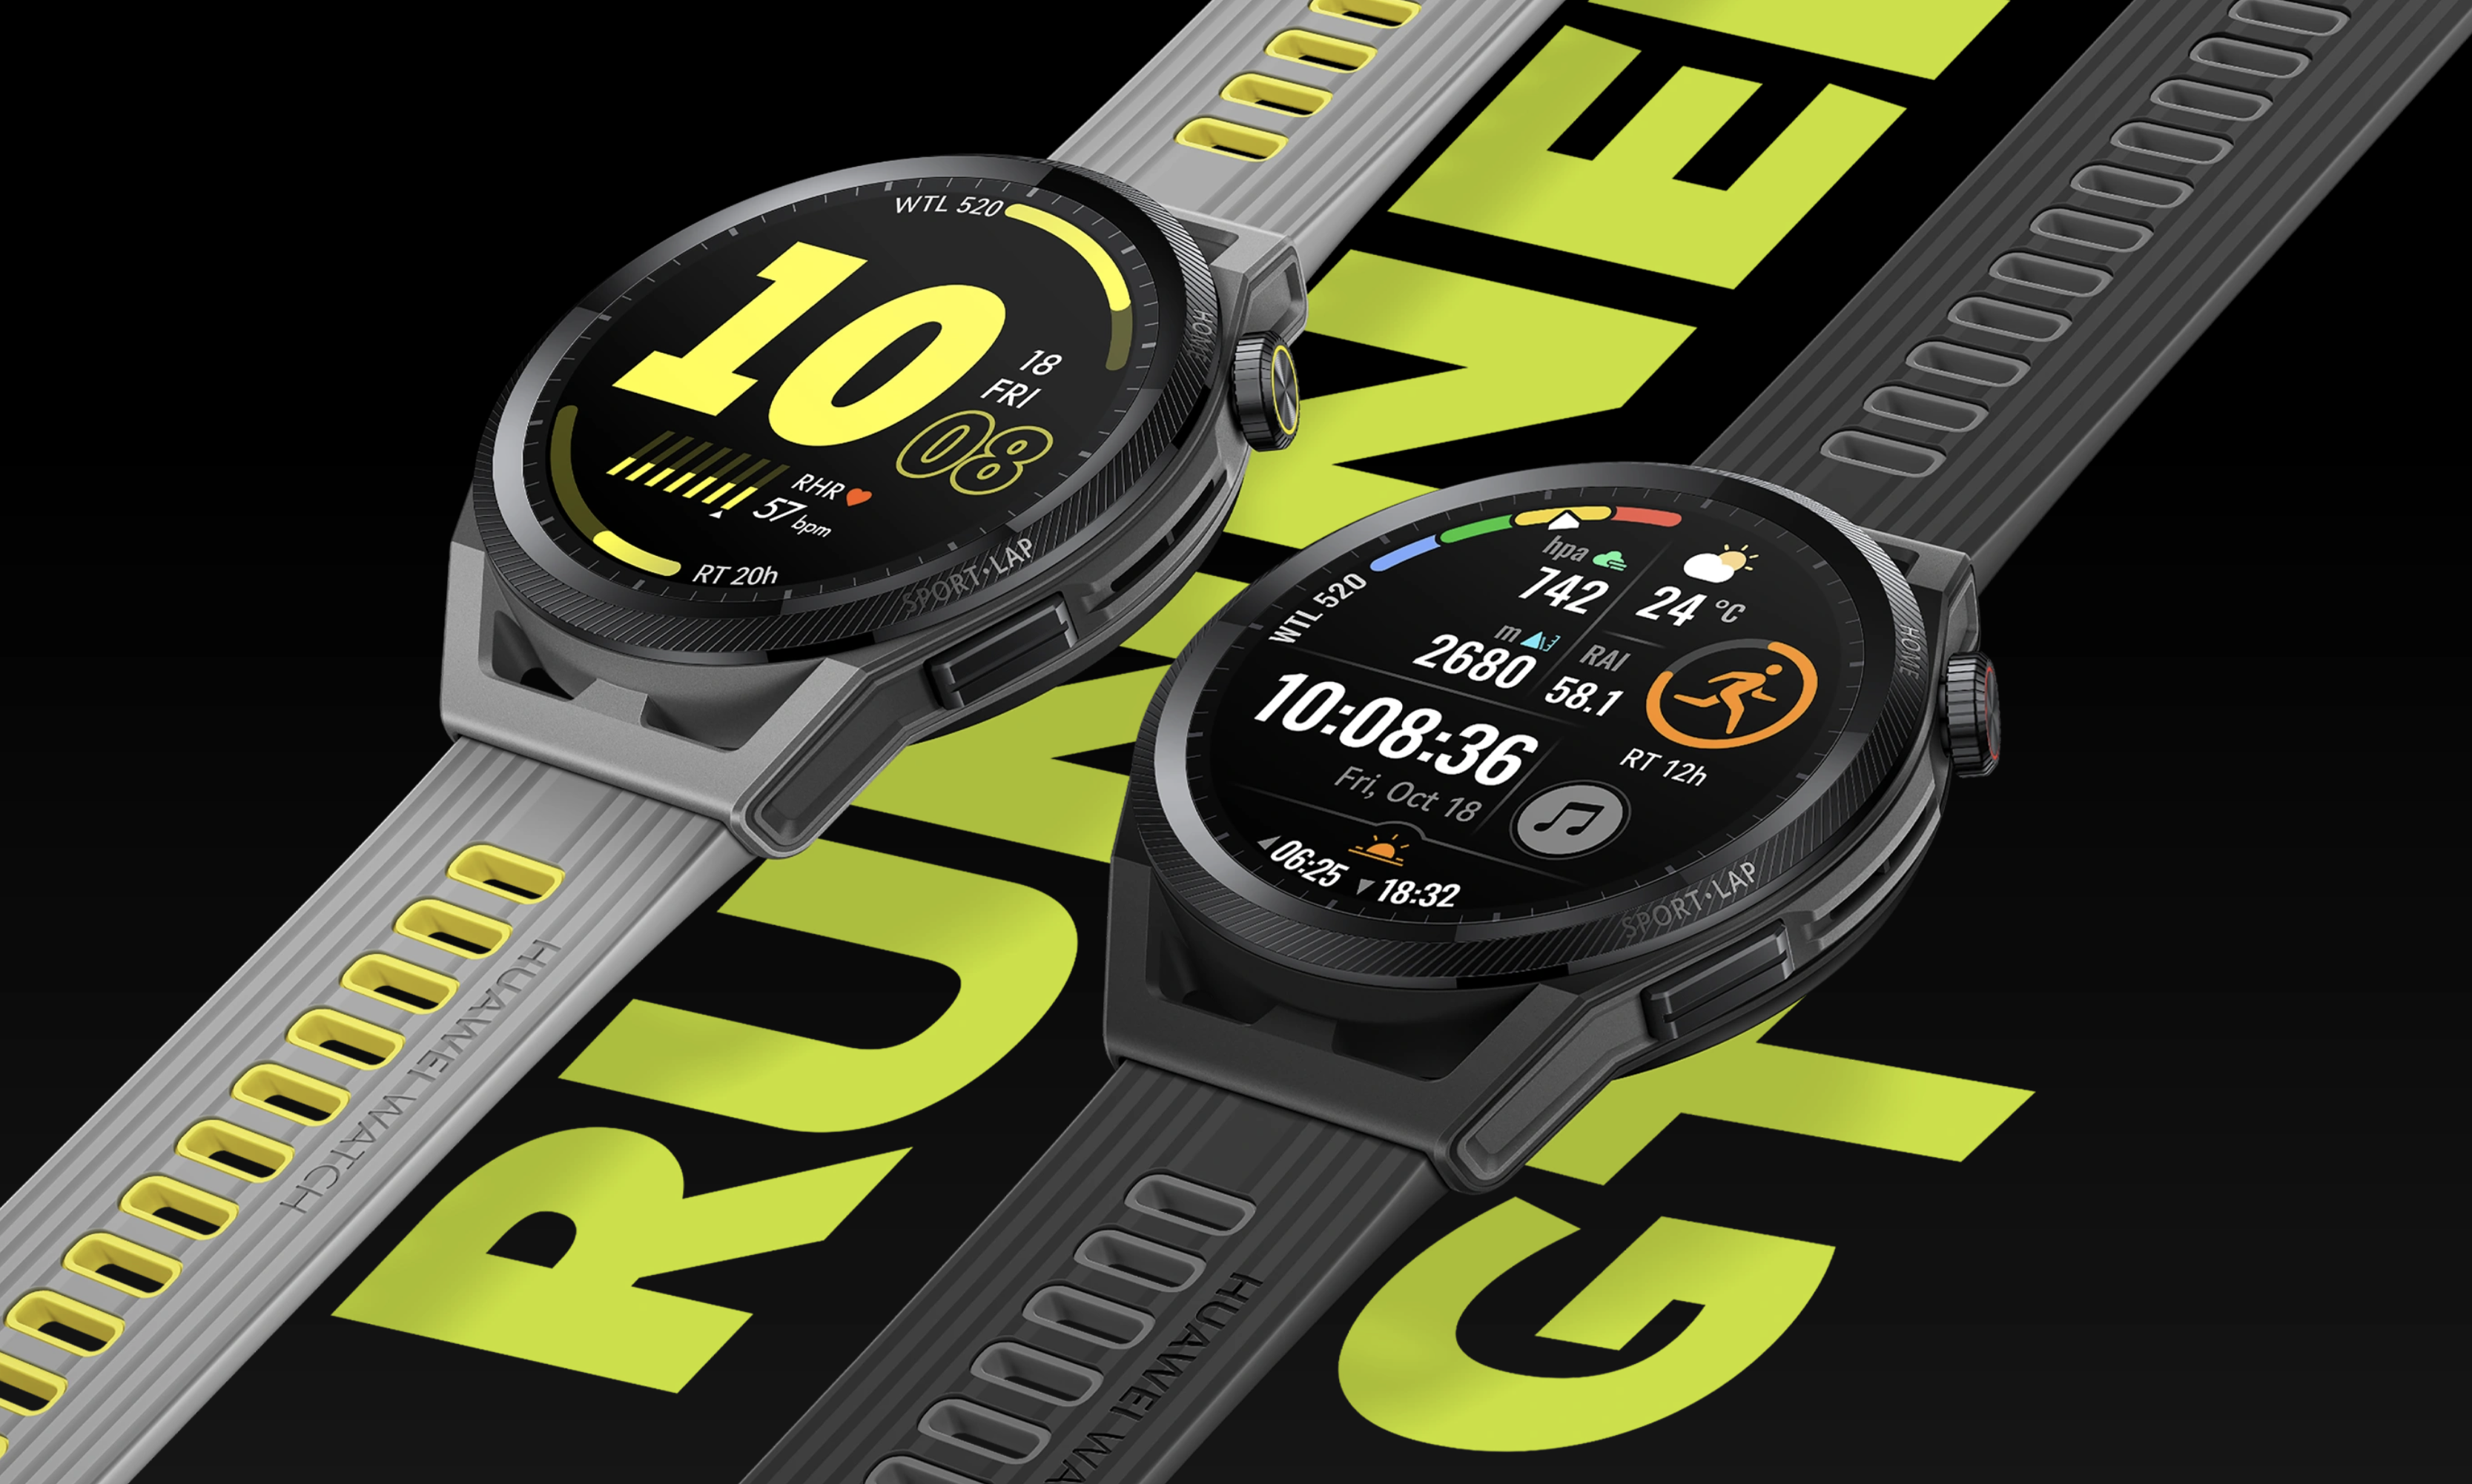 Huawei Watch GT Runner zyskuje nowe funkcje wraz z aktualizacją oprogramowania